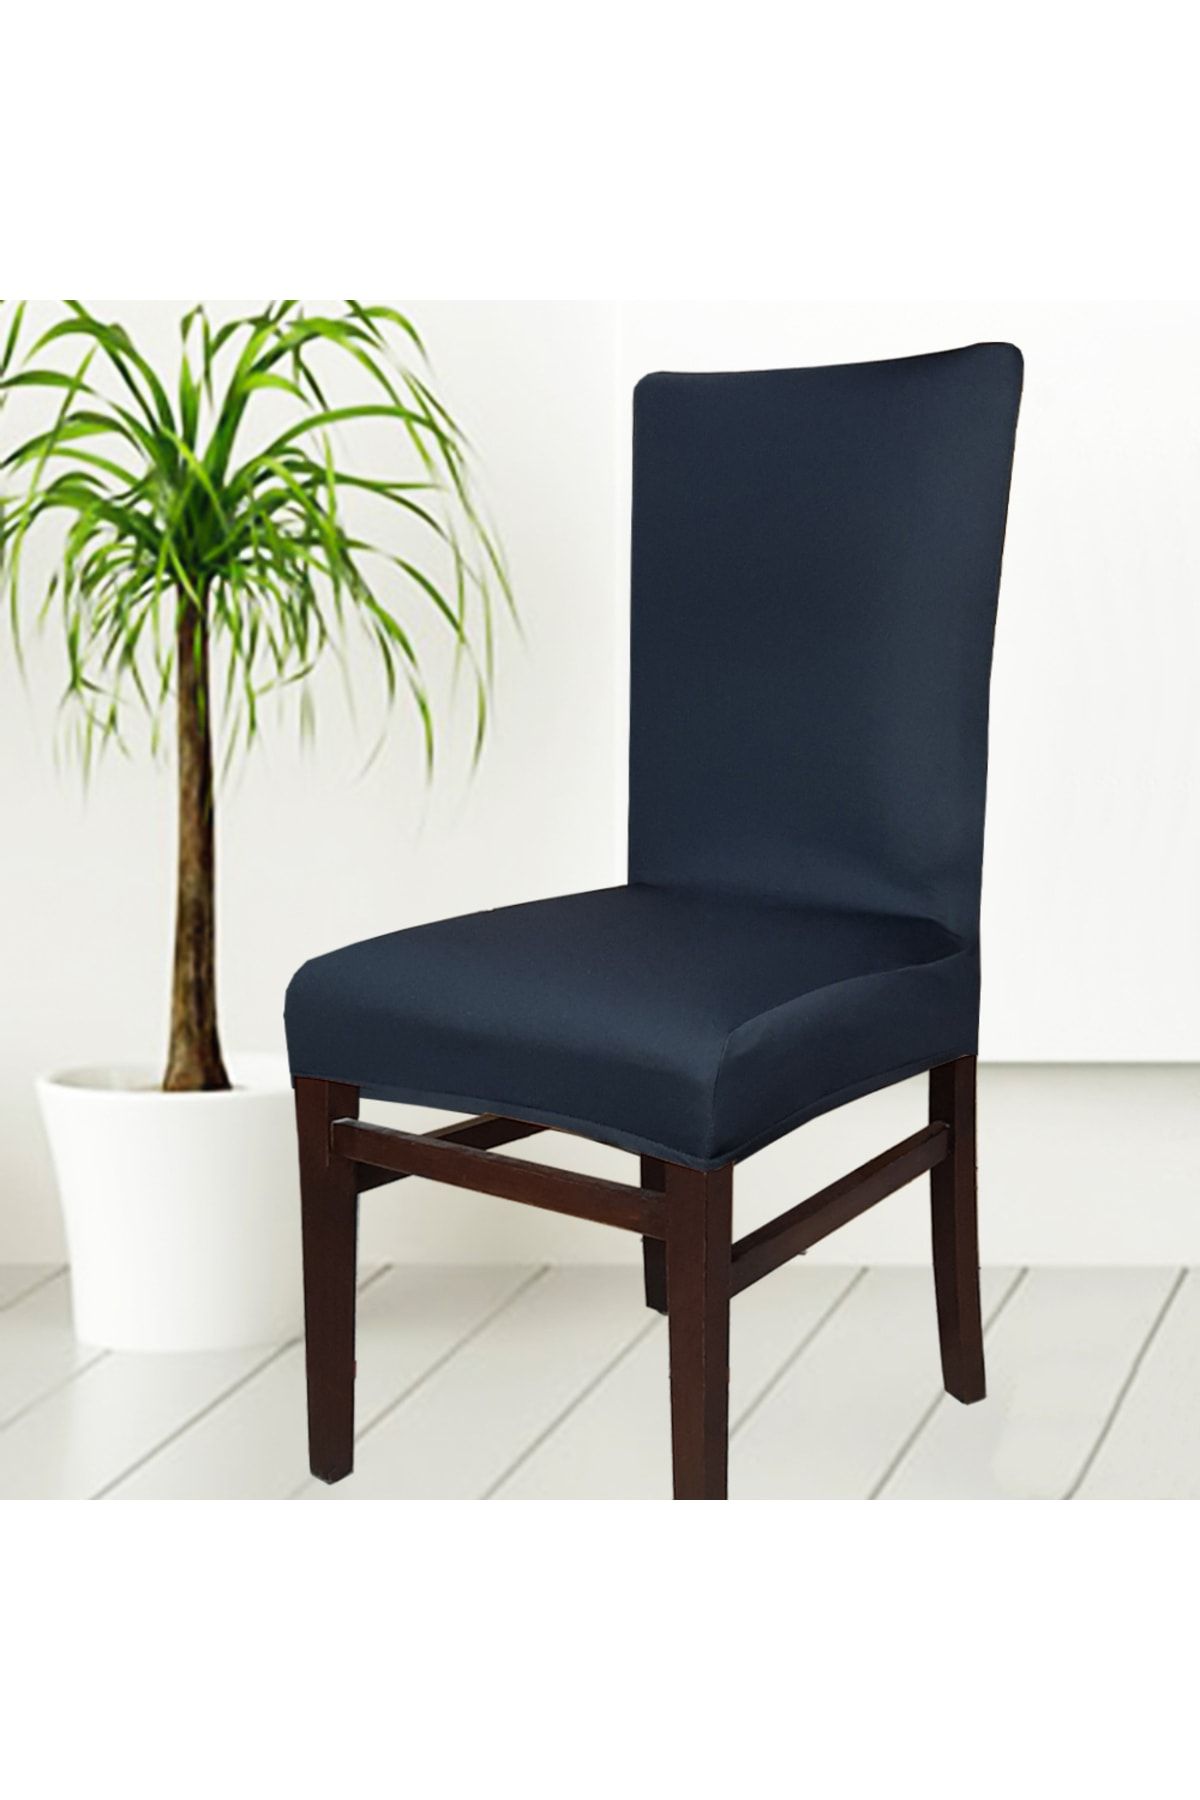 abeltrade Sandalye Kılıfı Kaliteli Mikro Kumaş Siyah Renk 6lı Standart Kare Sandalyelere Uygun 6lı